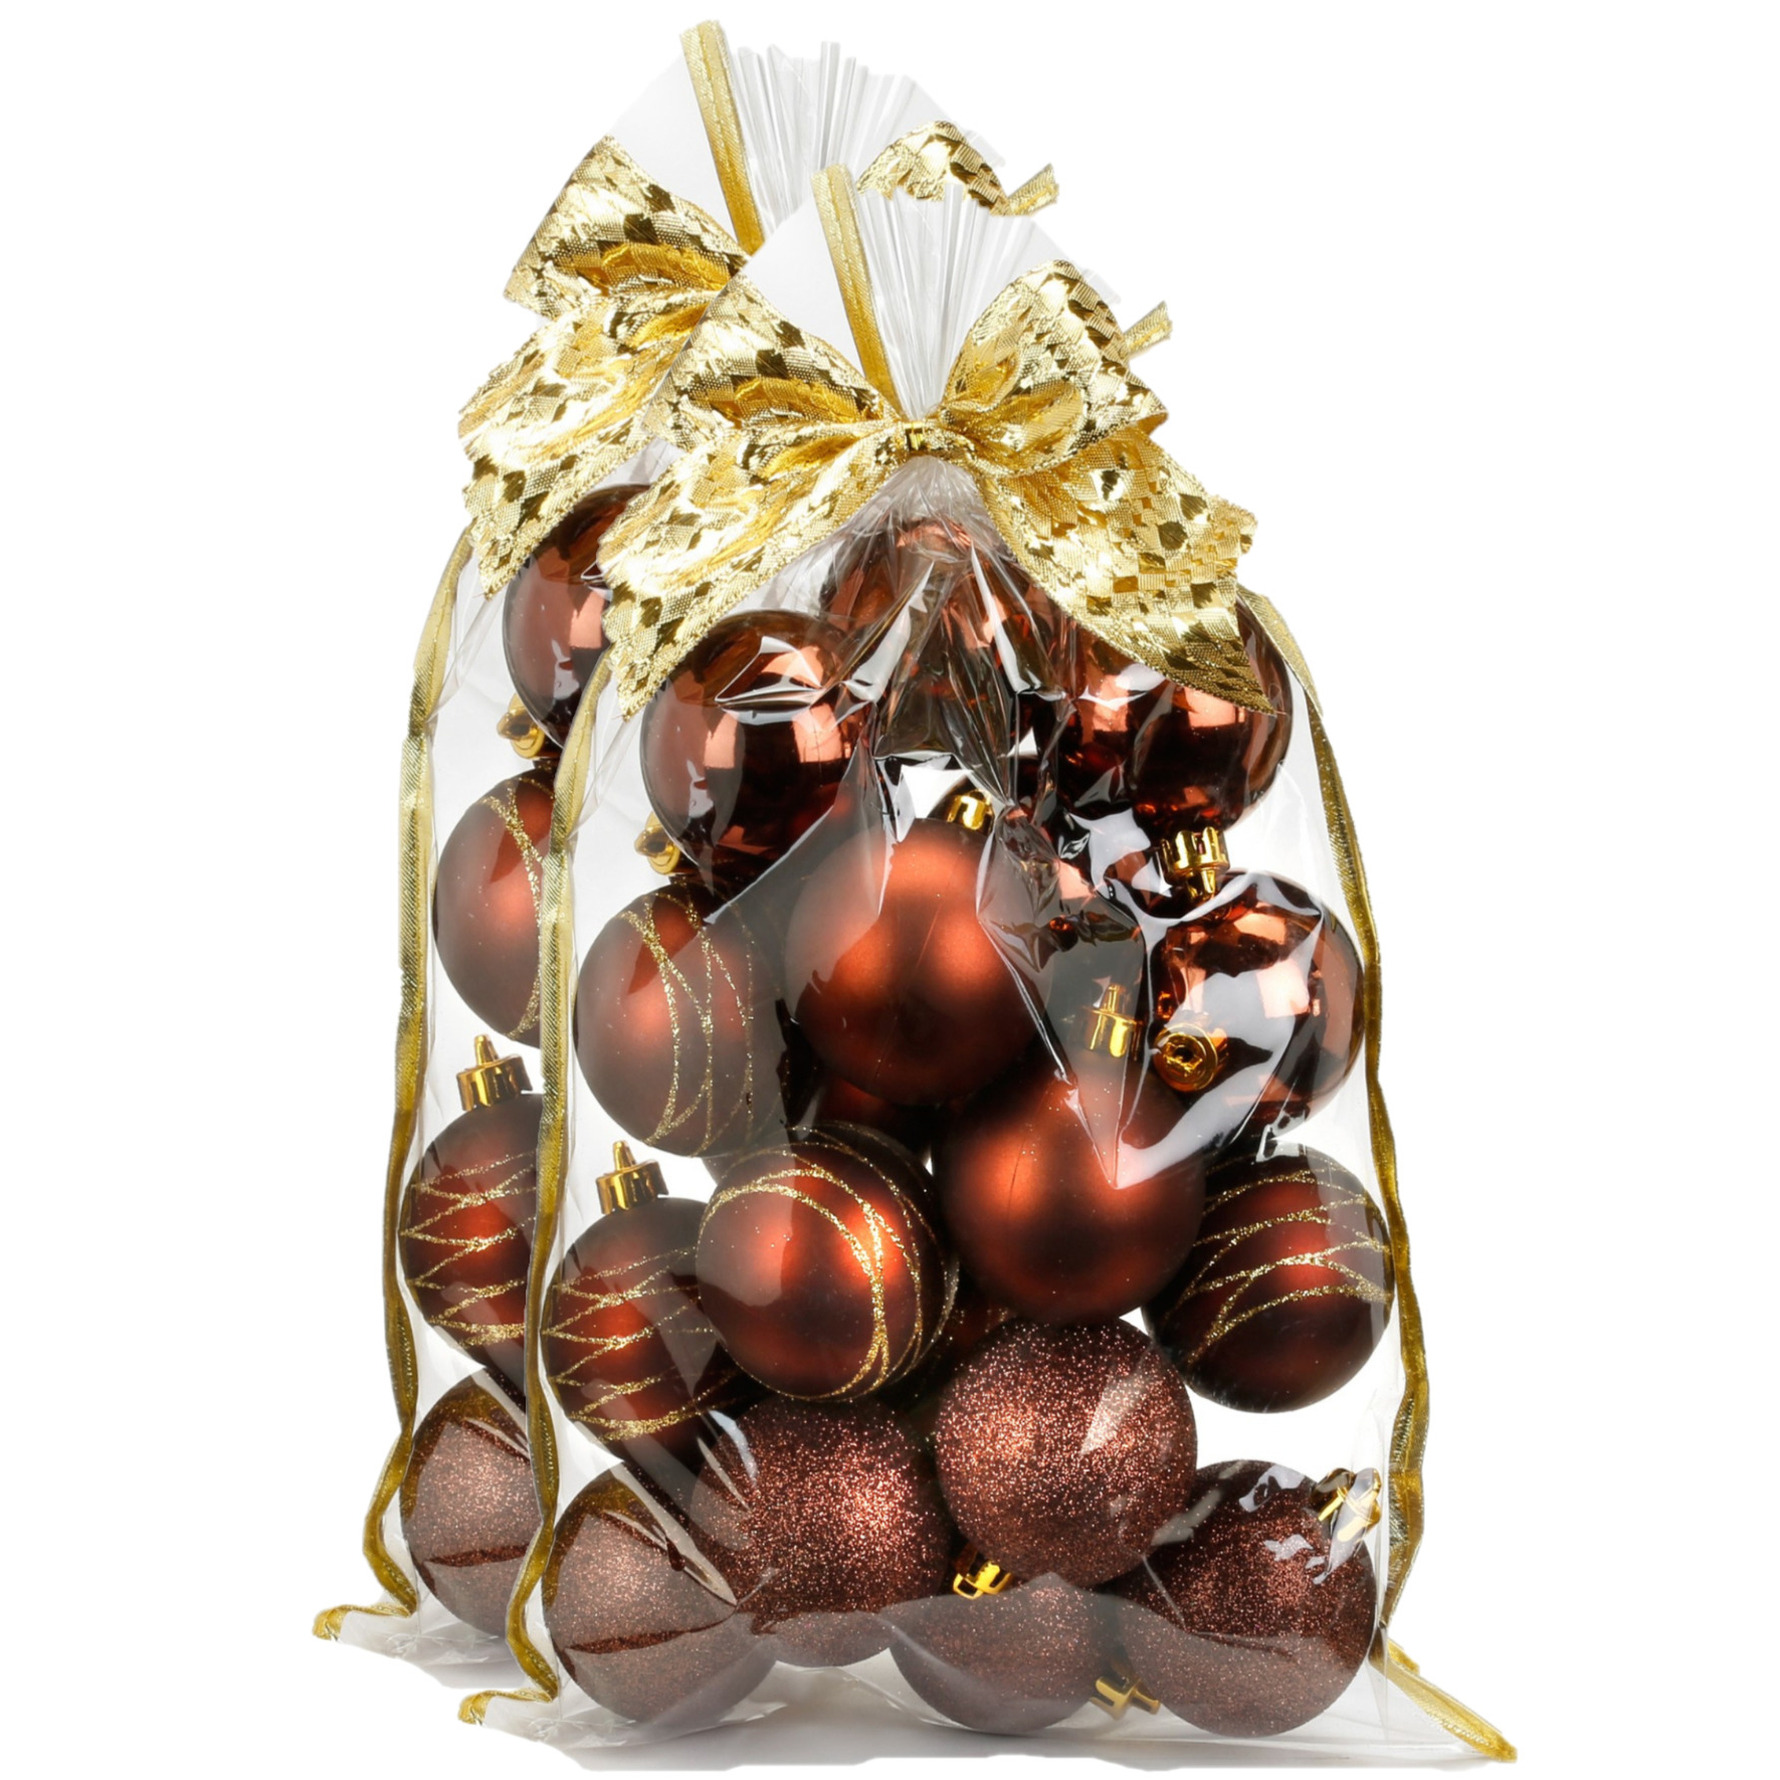 40x stuks kunststof/plastic kerstballen bruin mix 6 cm in giftbag - Kerstboomversiering/kerstversiering